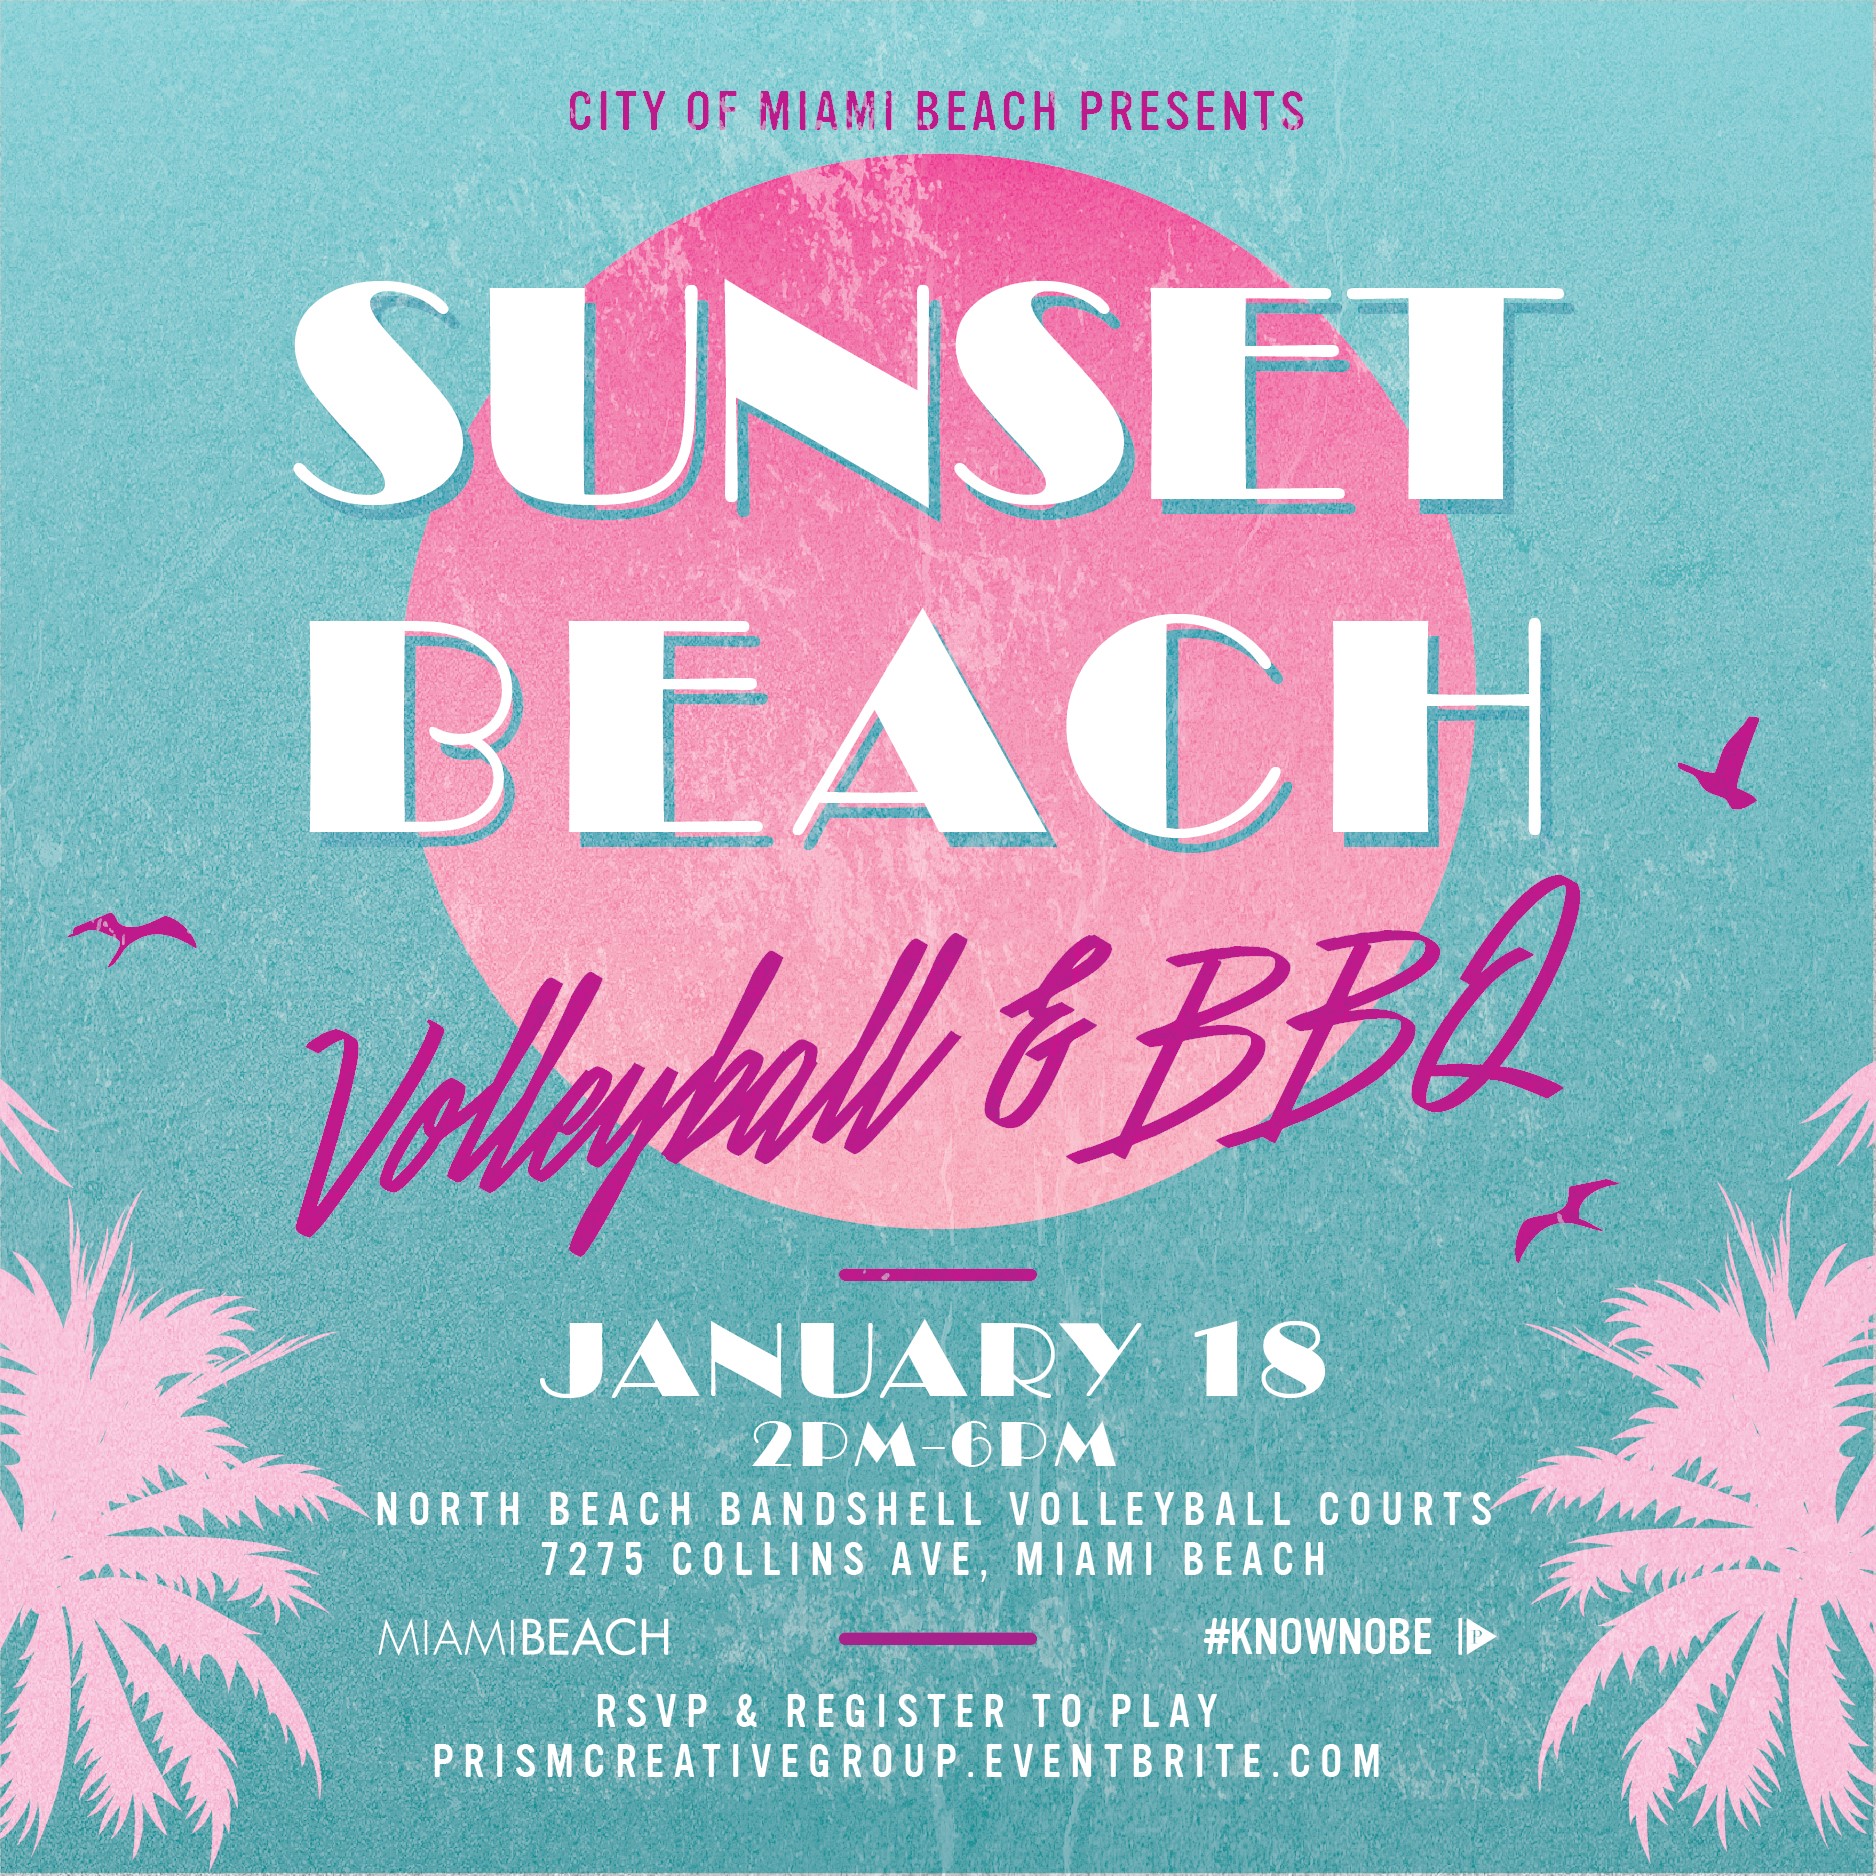 Sunset Beach Volleyball & BBQ